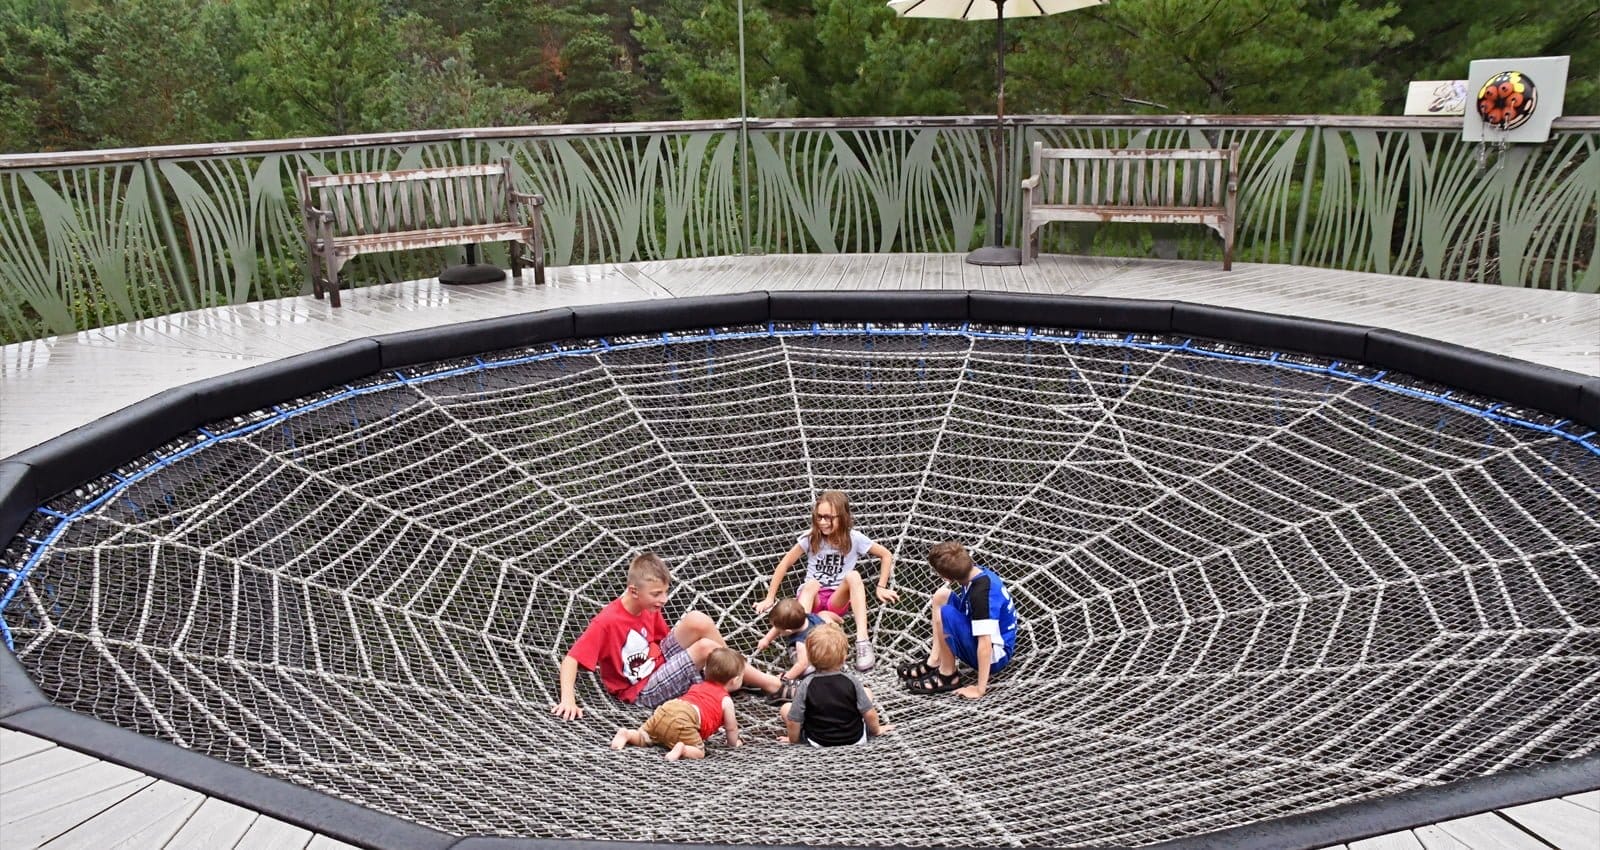 The Wild Center's Spider Web | Kids playing in The Wild Center's spider web | Photo Courtesy of Lisa Ballard